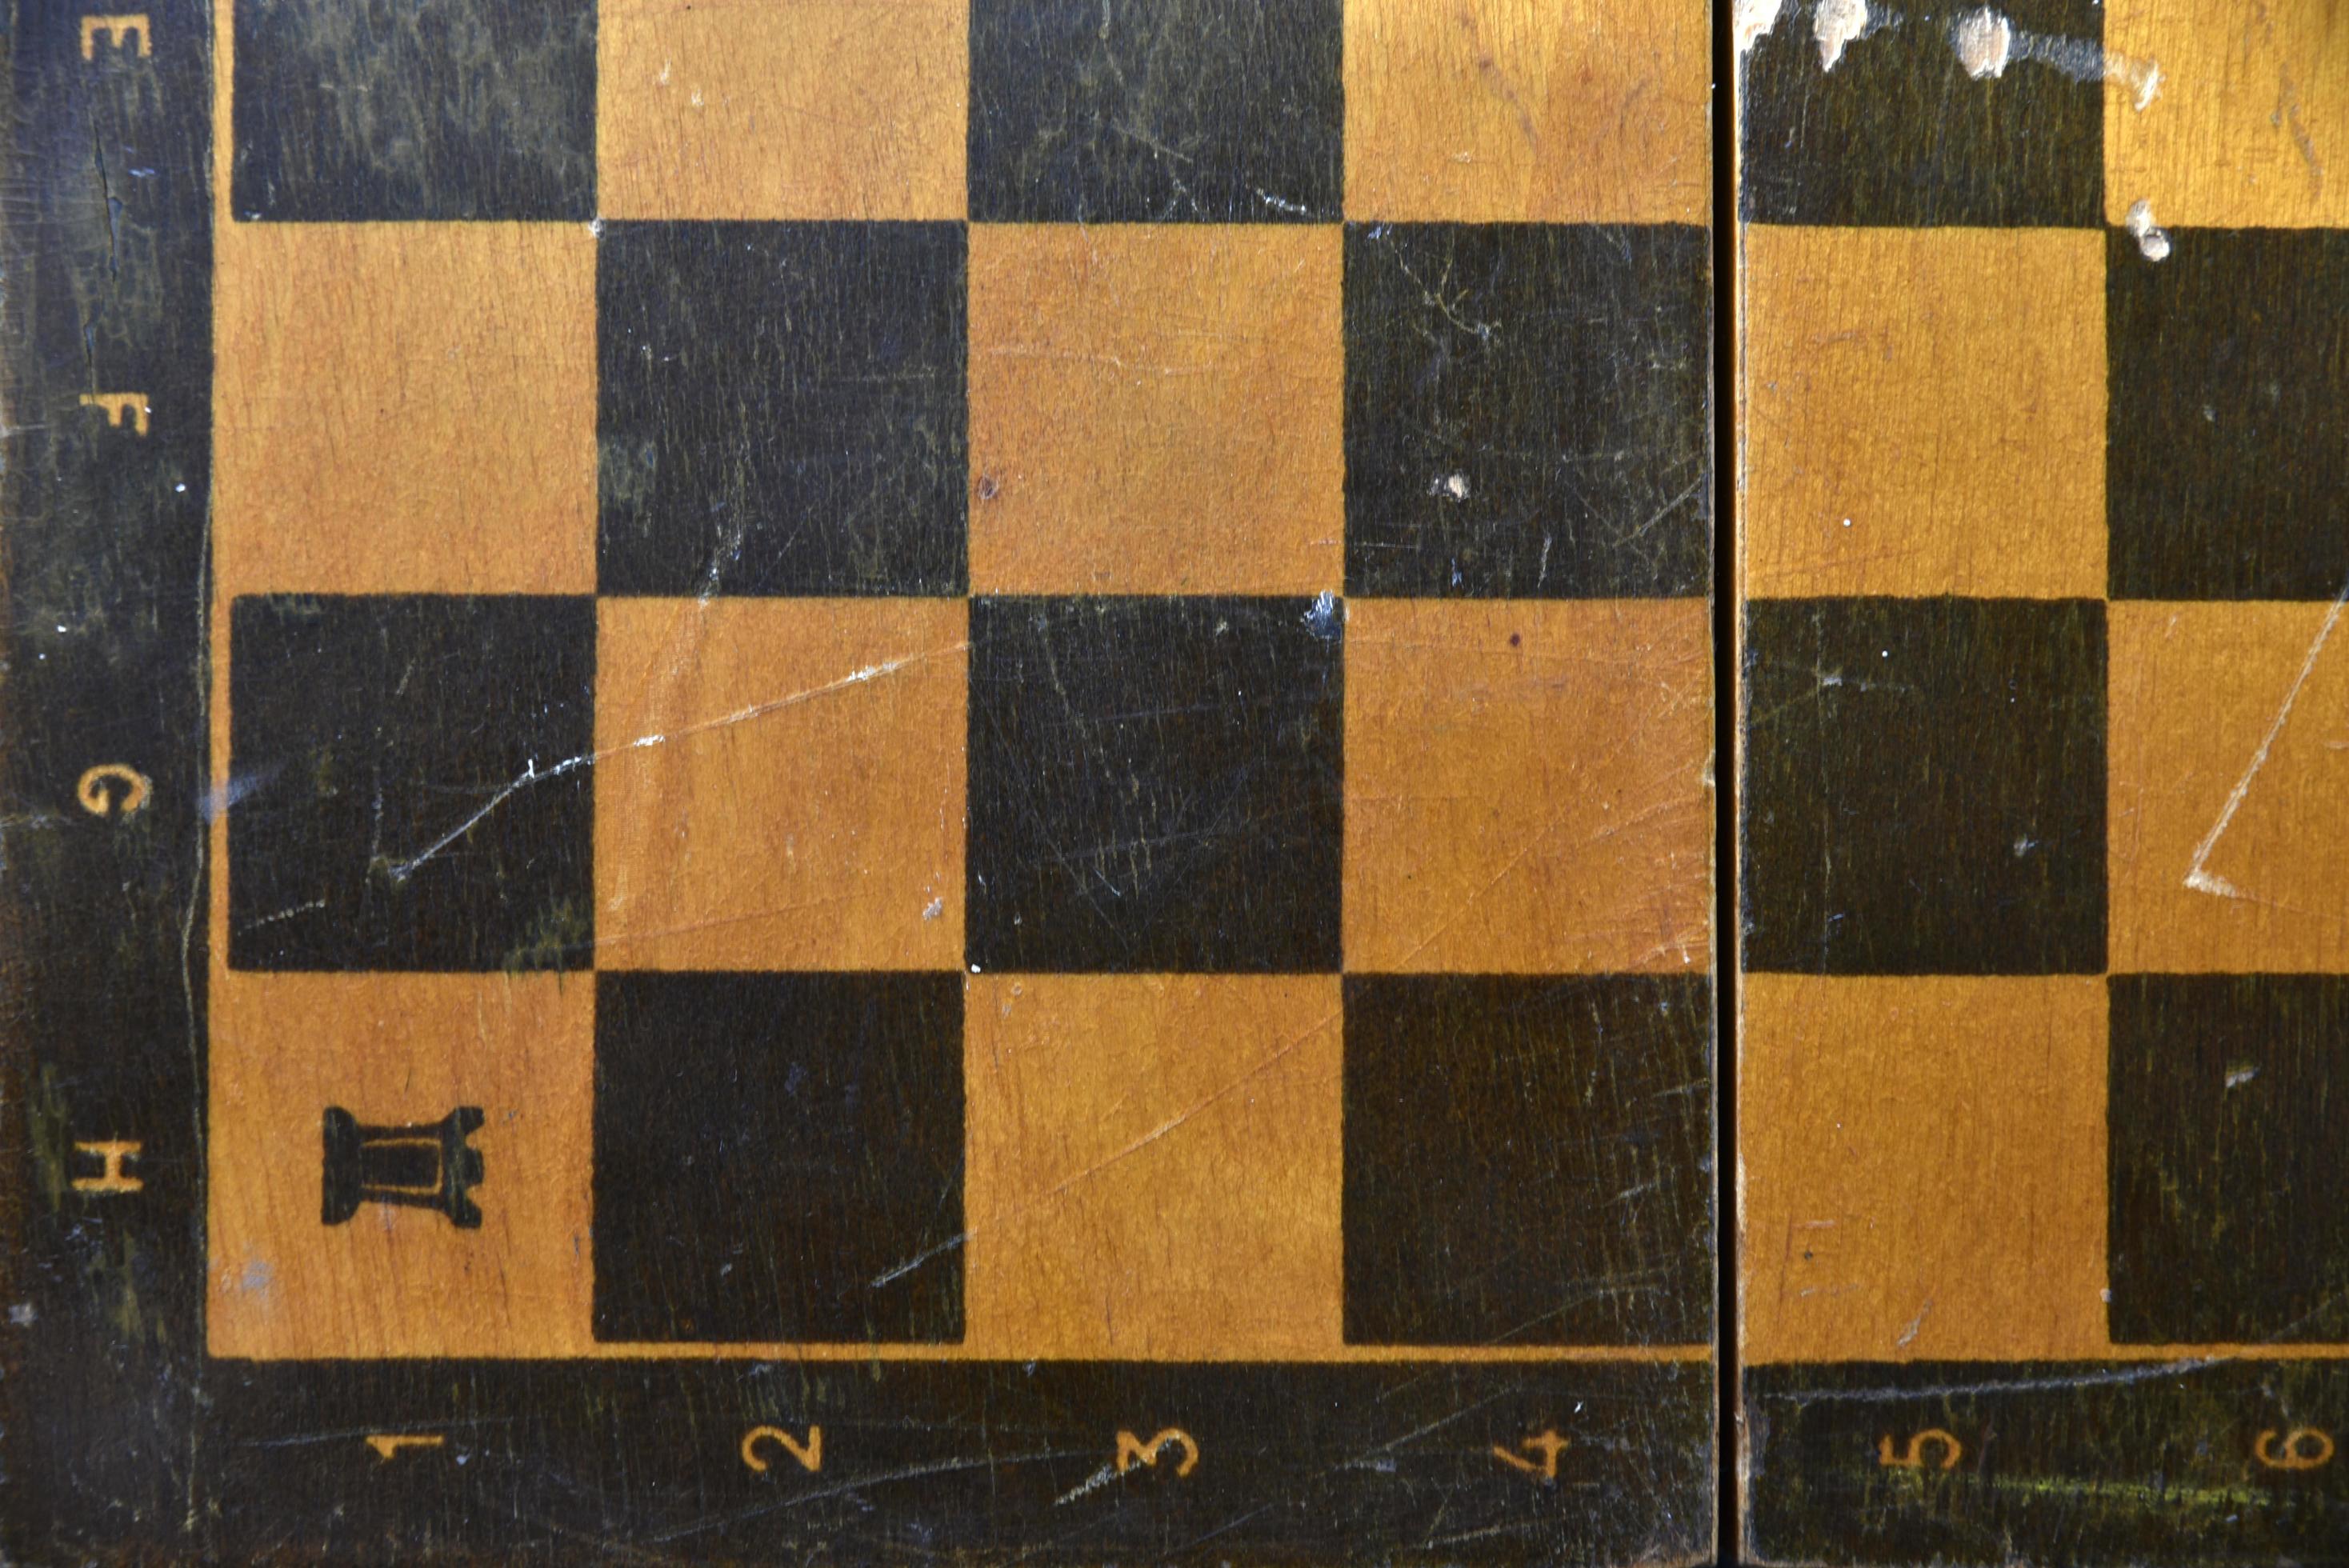 Perto do velho tabuleiro de xadrez com um conjunto de peças de